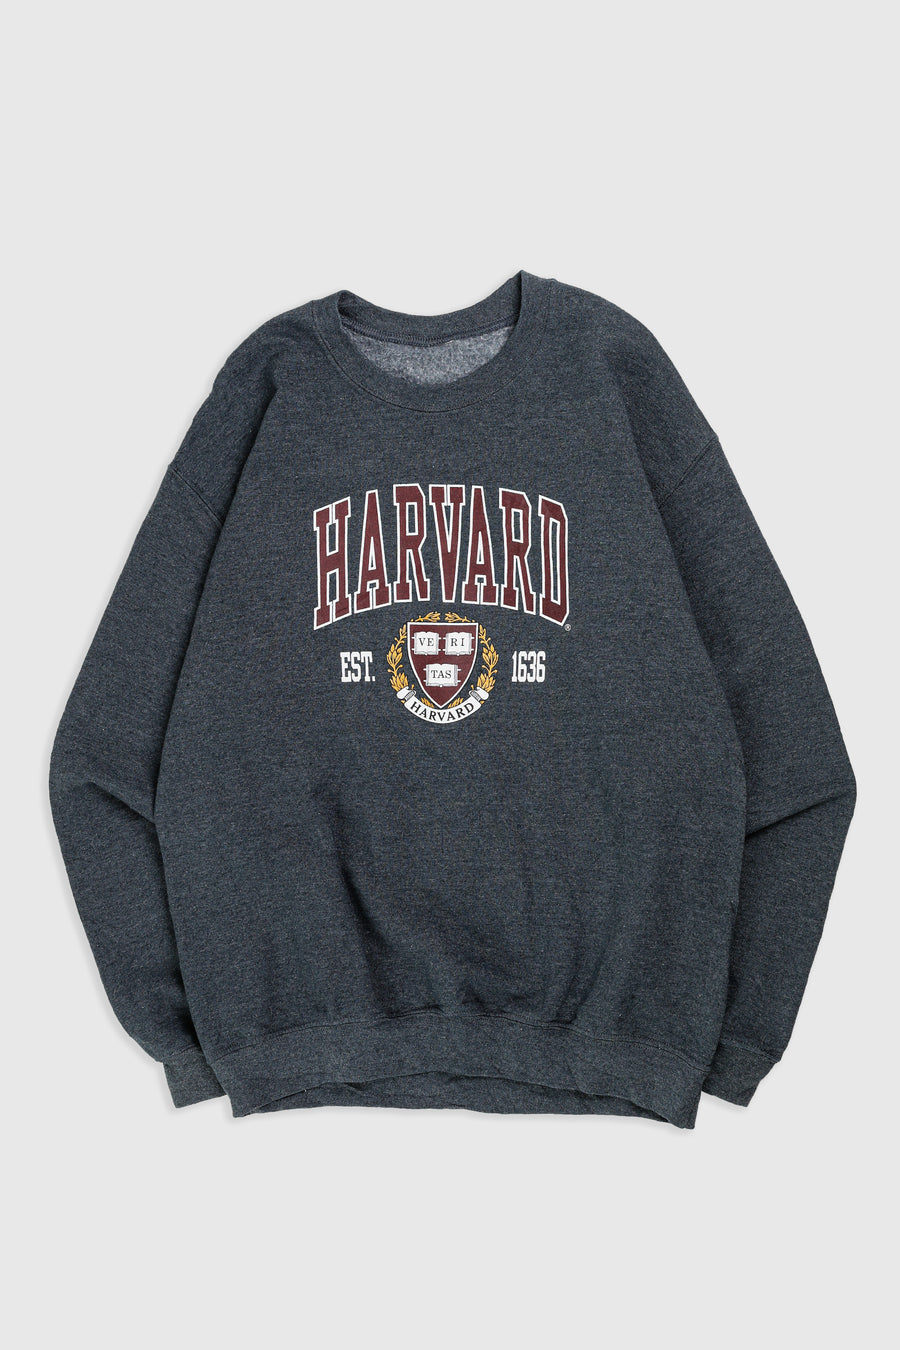 Vintage Harvard Sweatshirt - M